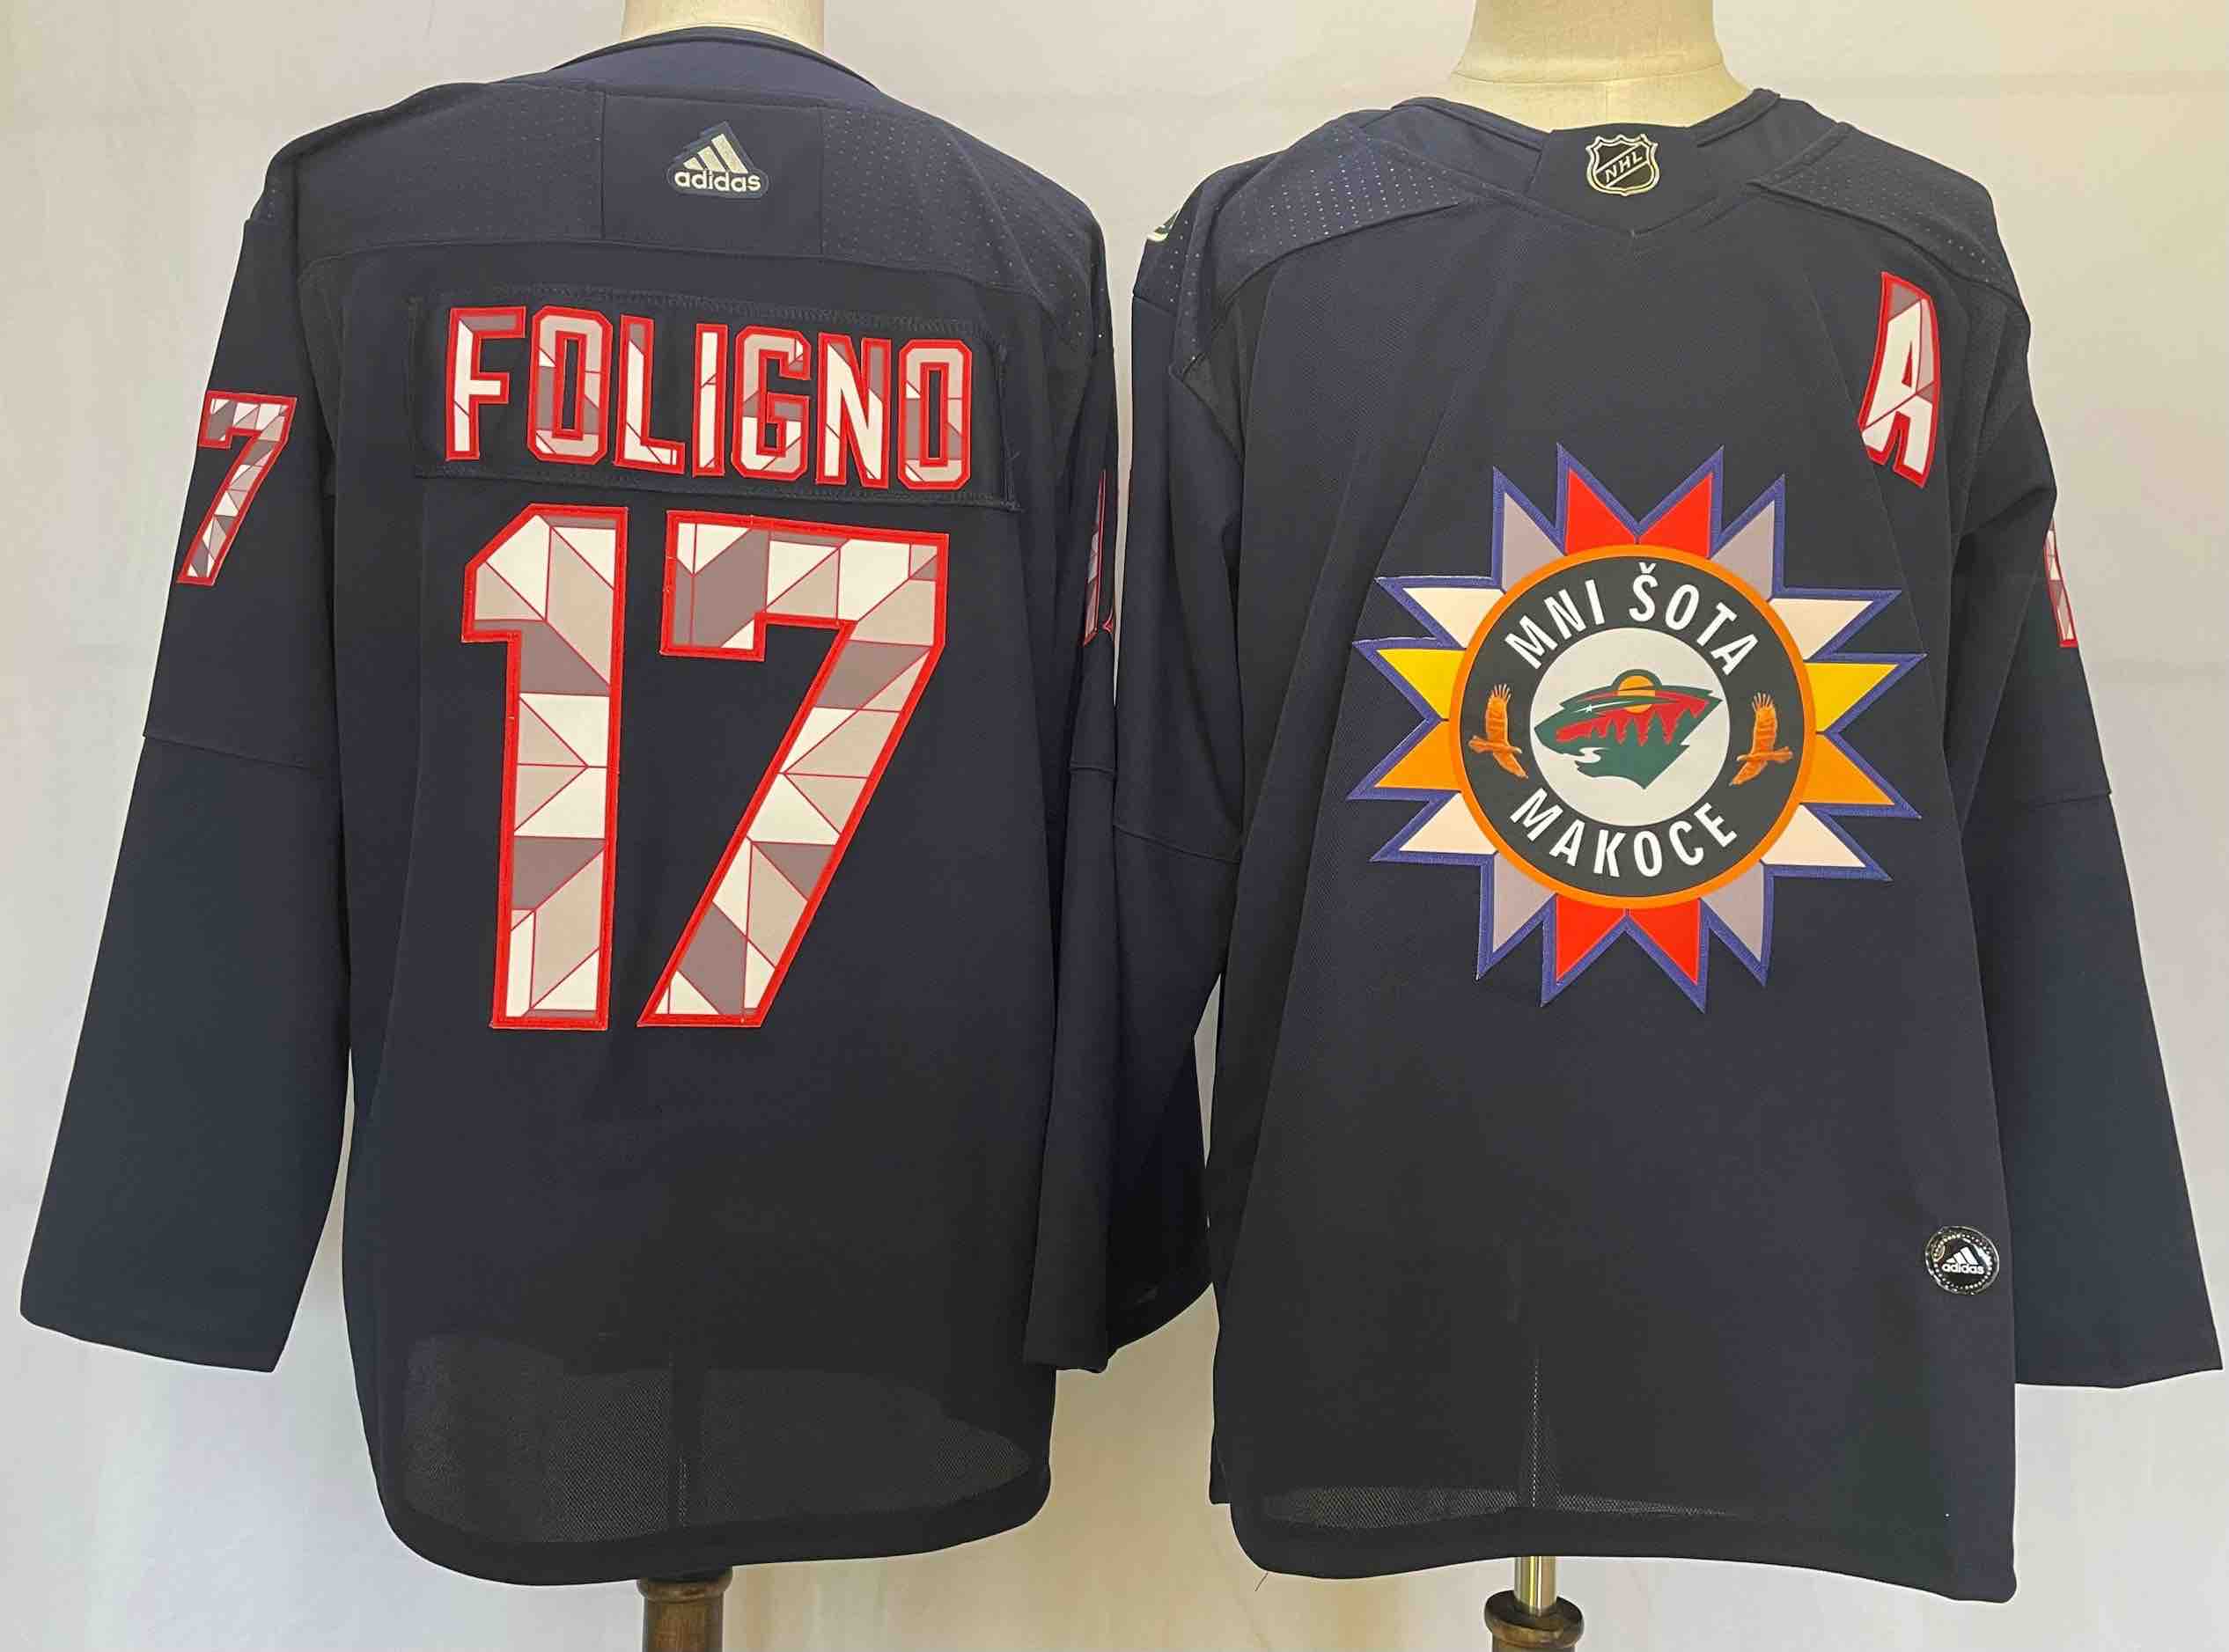 NHL Mnisota Makoce #17 FOligno Back Jersey